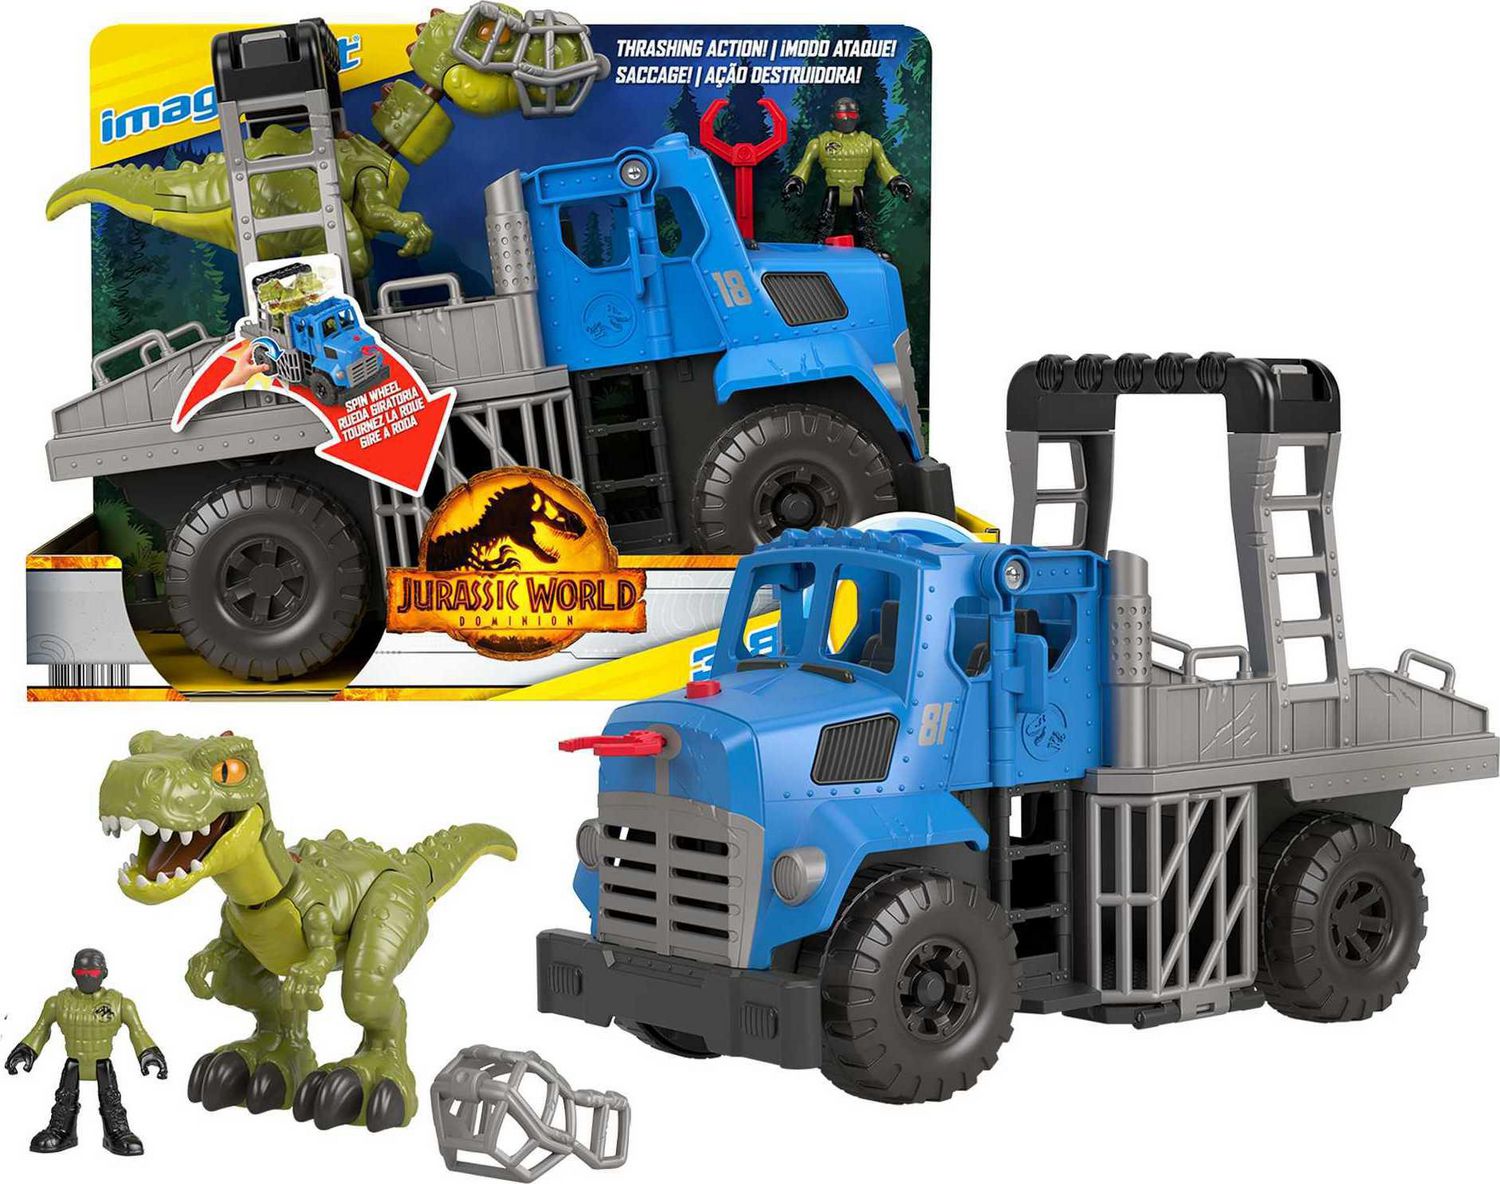 Dinosaure camion amovible dinosaure jouet voiture pour Dinotrux